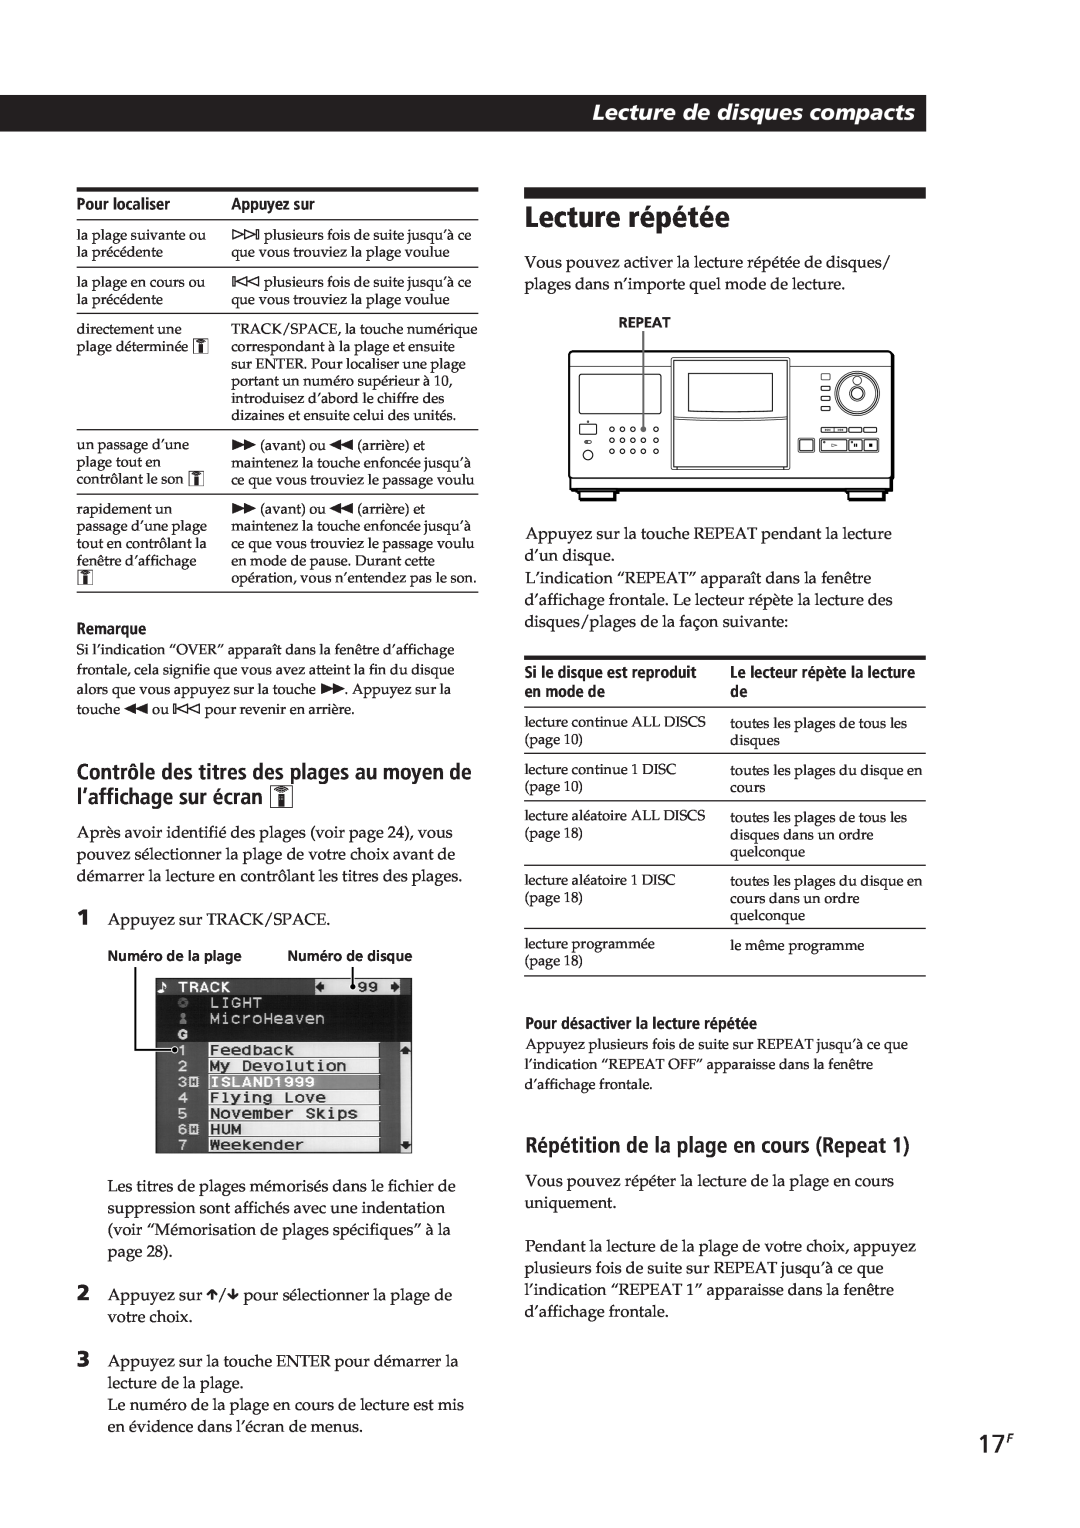 Sony CDP-CX90ES manual Lecture répétée, Lecture de disques compacts, Répétition de la plage en cours Repeat, Pour localiser 